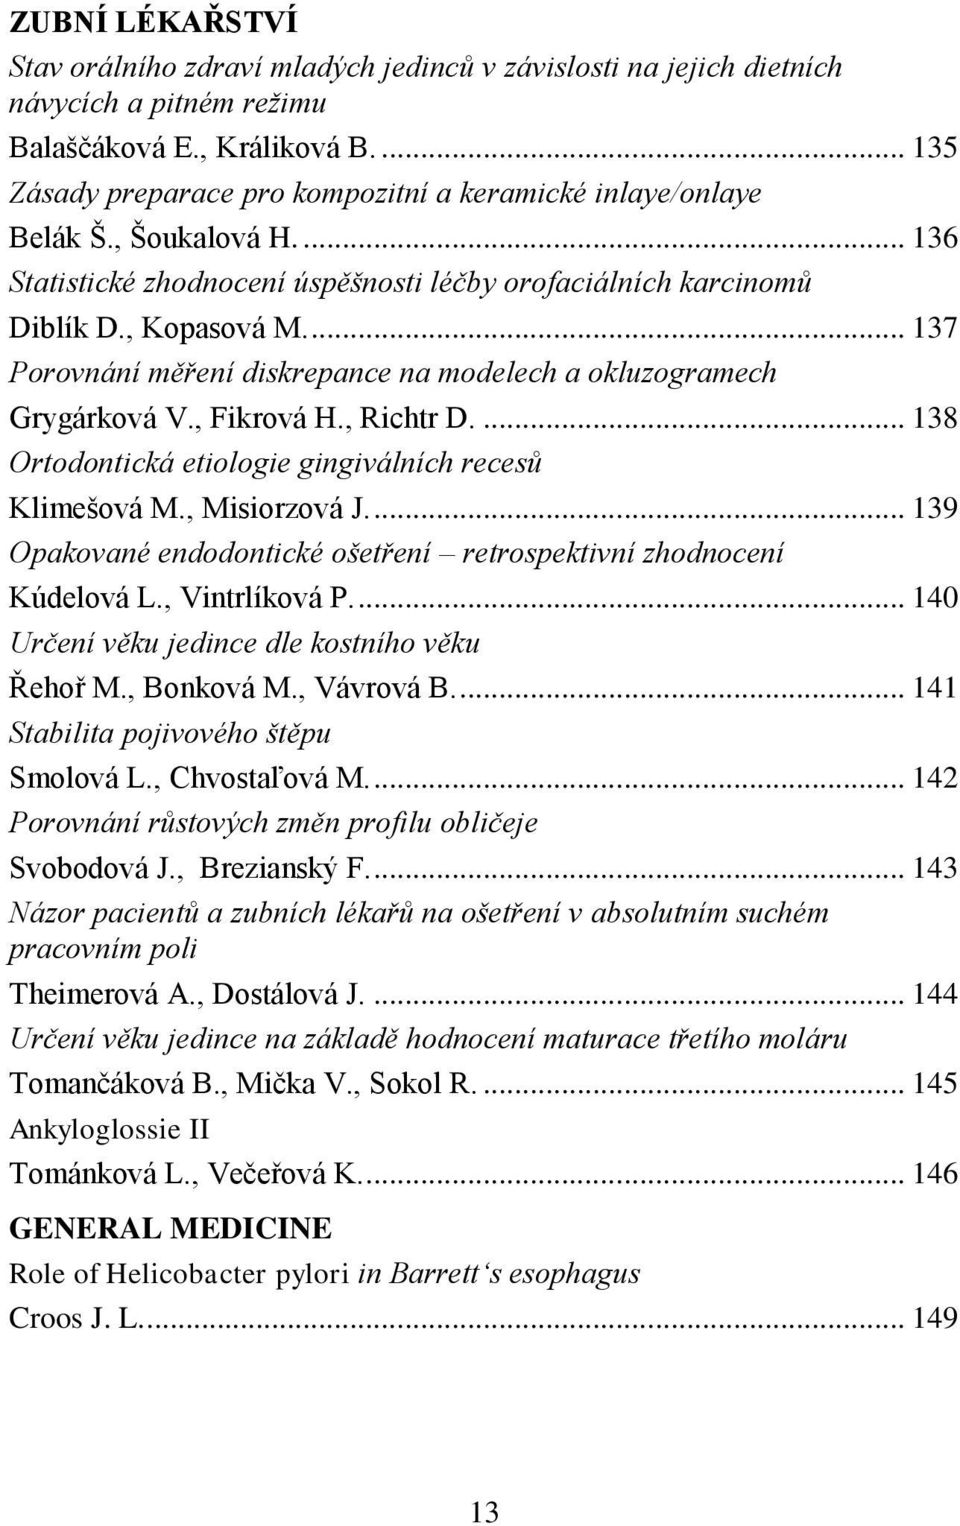 ... 137 Porovnání měření diskrepance na modelech a okluzogramech Grygárková V., Fikrová H., Richtr D.... 138 Ortodontická etiologie gingiválních recesů Klimešová M., Misiorzová J.